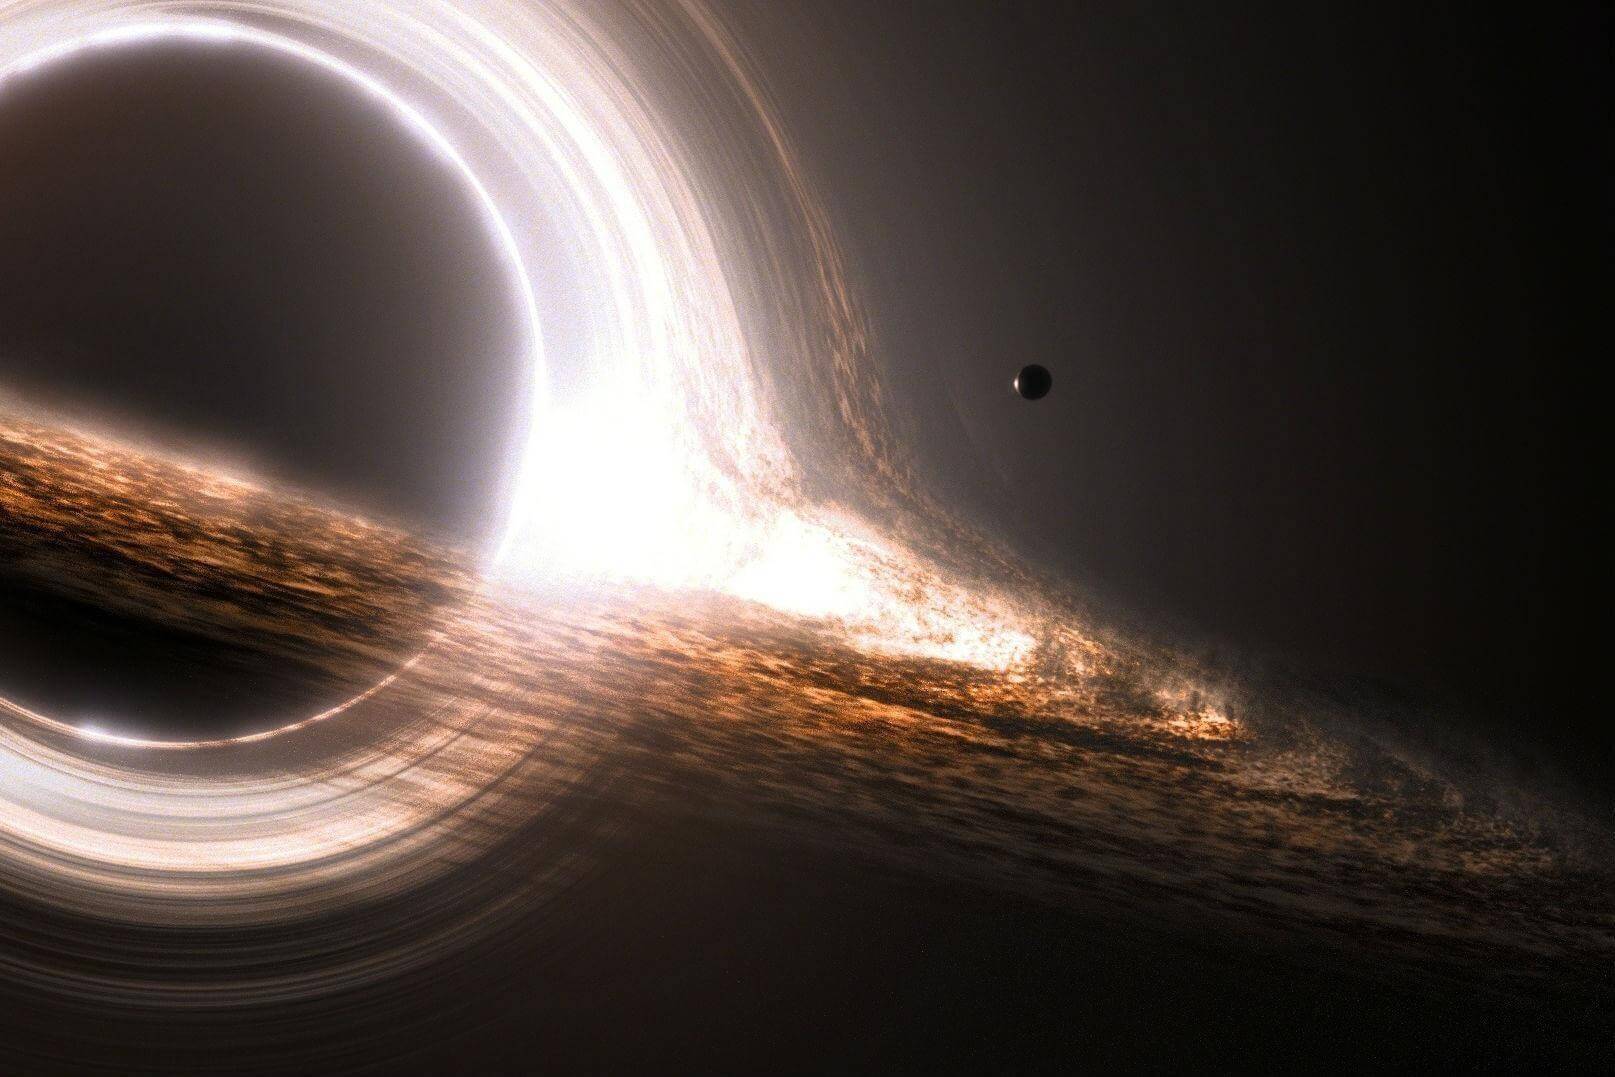 Bilim adamları bulduk büyük bir kara delik, ama sorguluyor bu